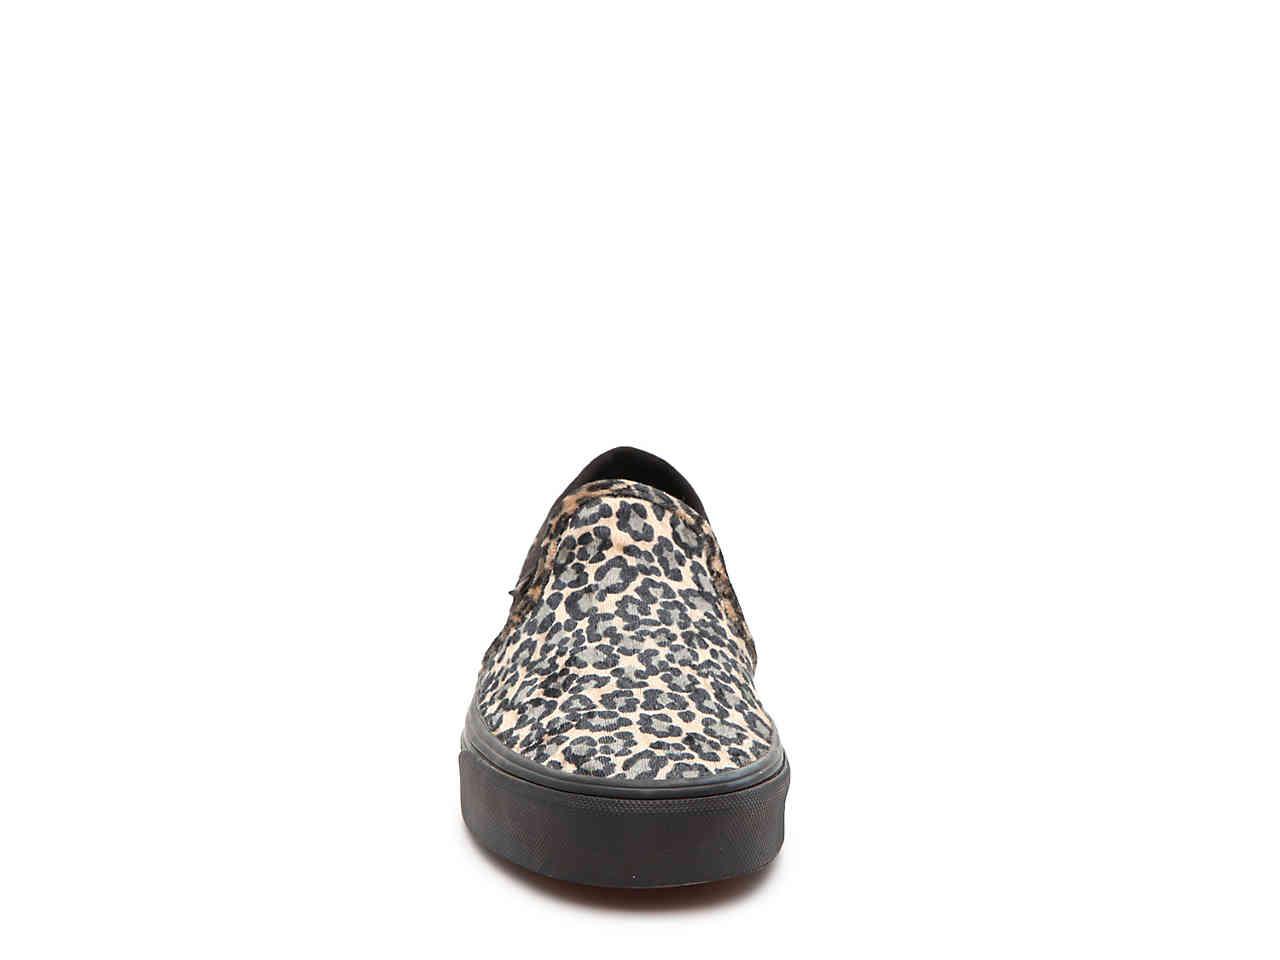 Vans Velvet Asher Slip-on Sneaker in Tan/Black Leopard Print (Black) | Lyst